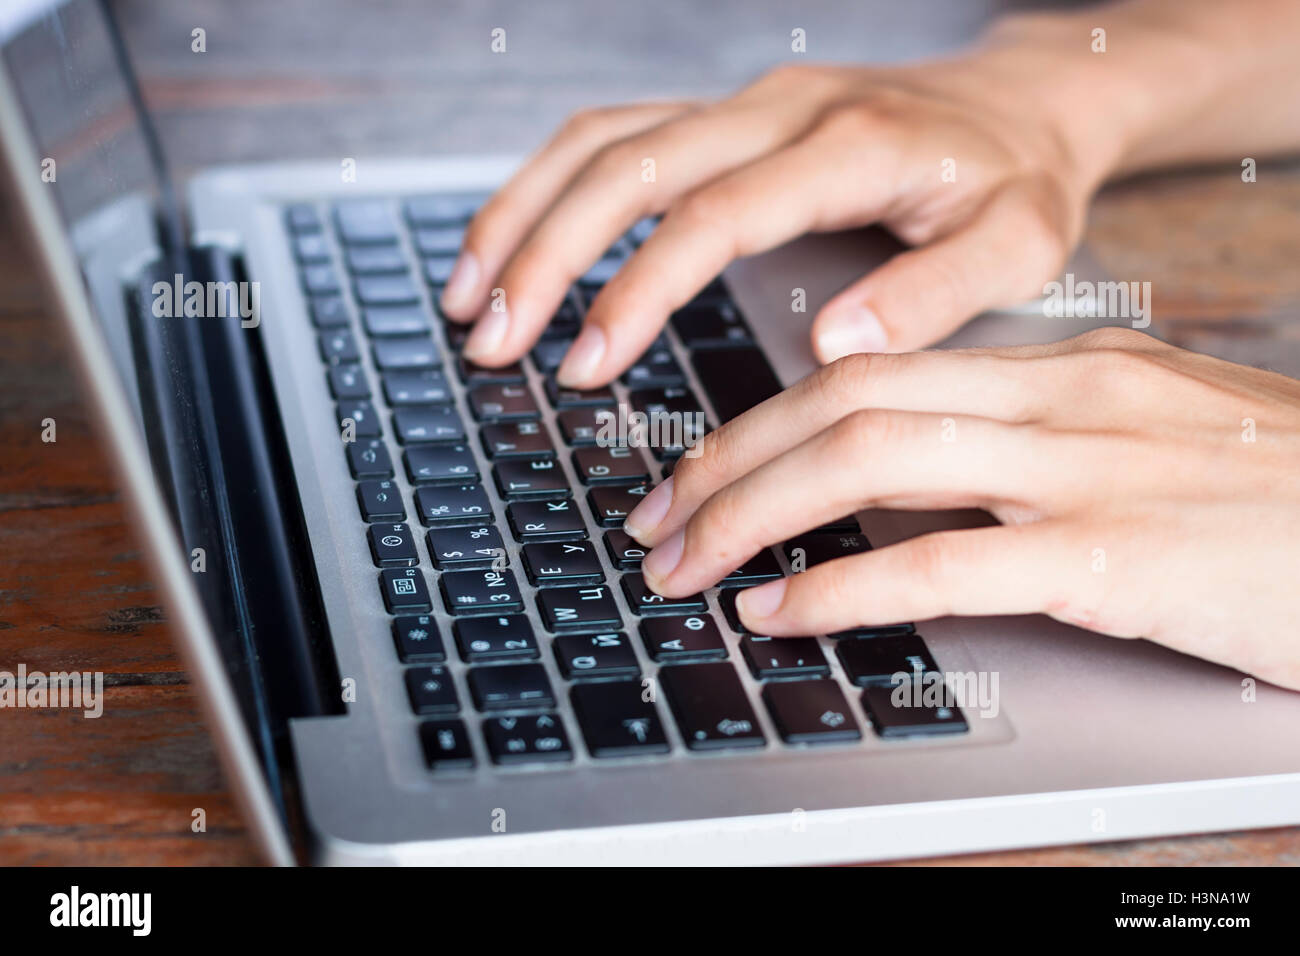 Suaves manos femeninas jóvenes escribiendo en un teclado de ordenador moderno Foto de stock